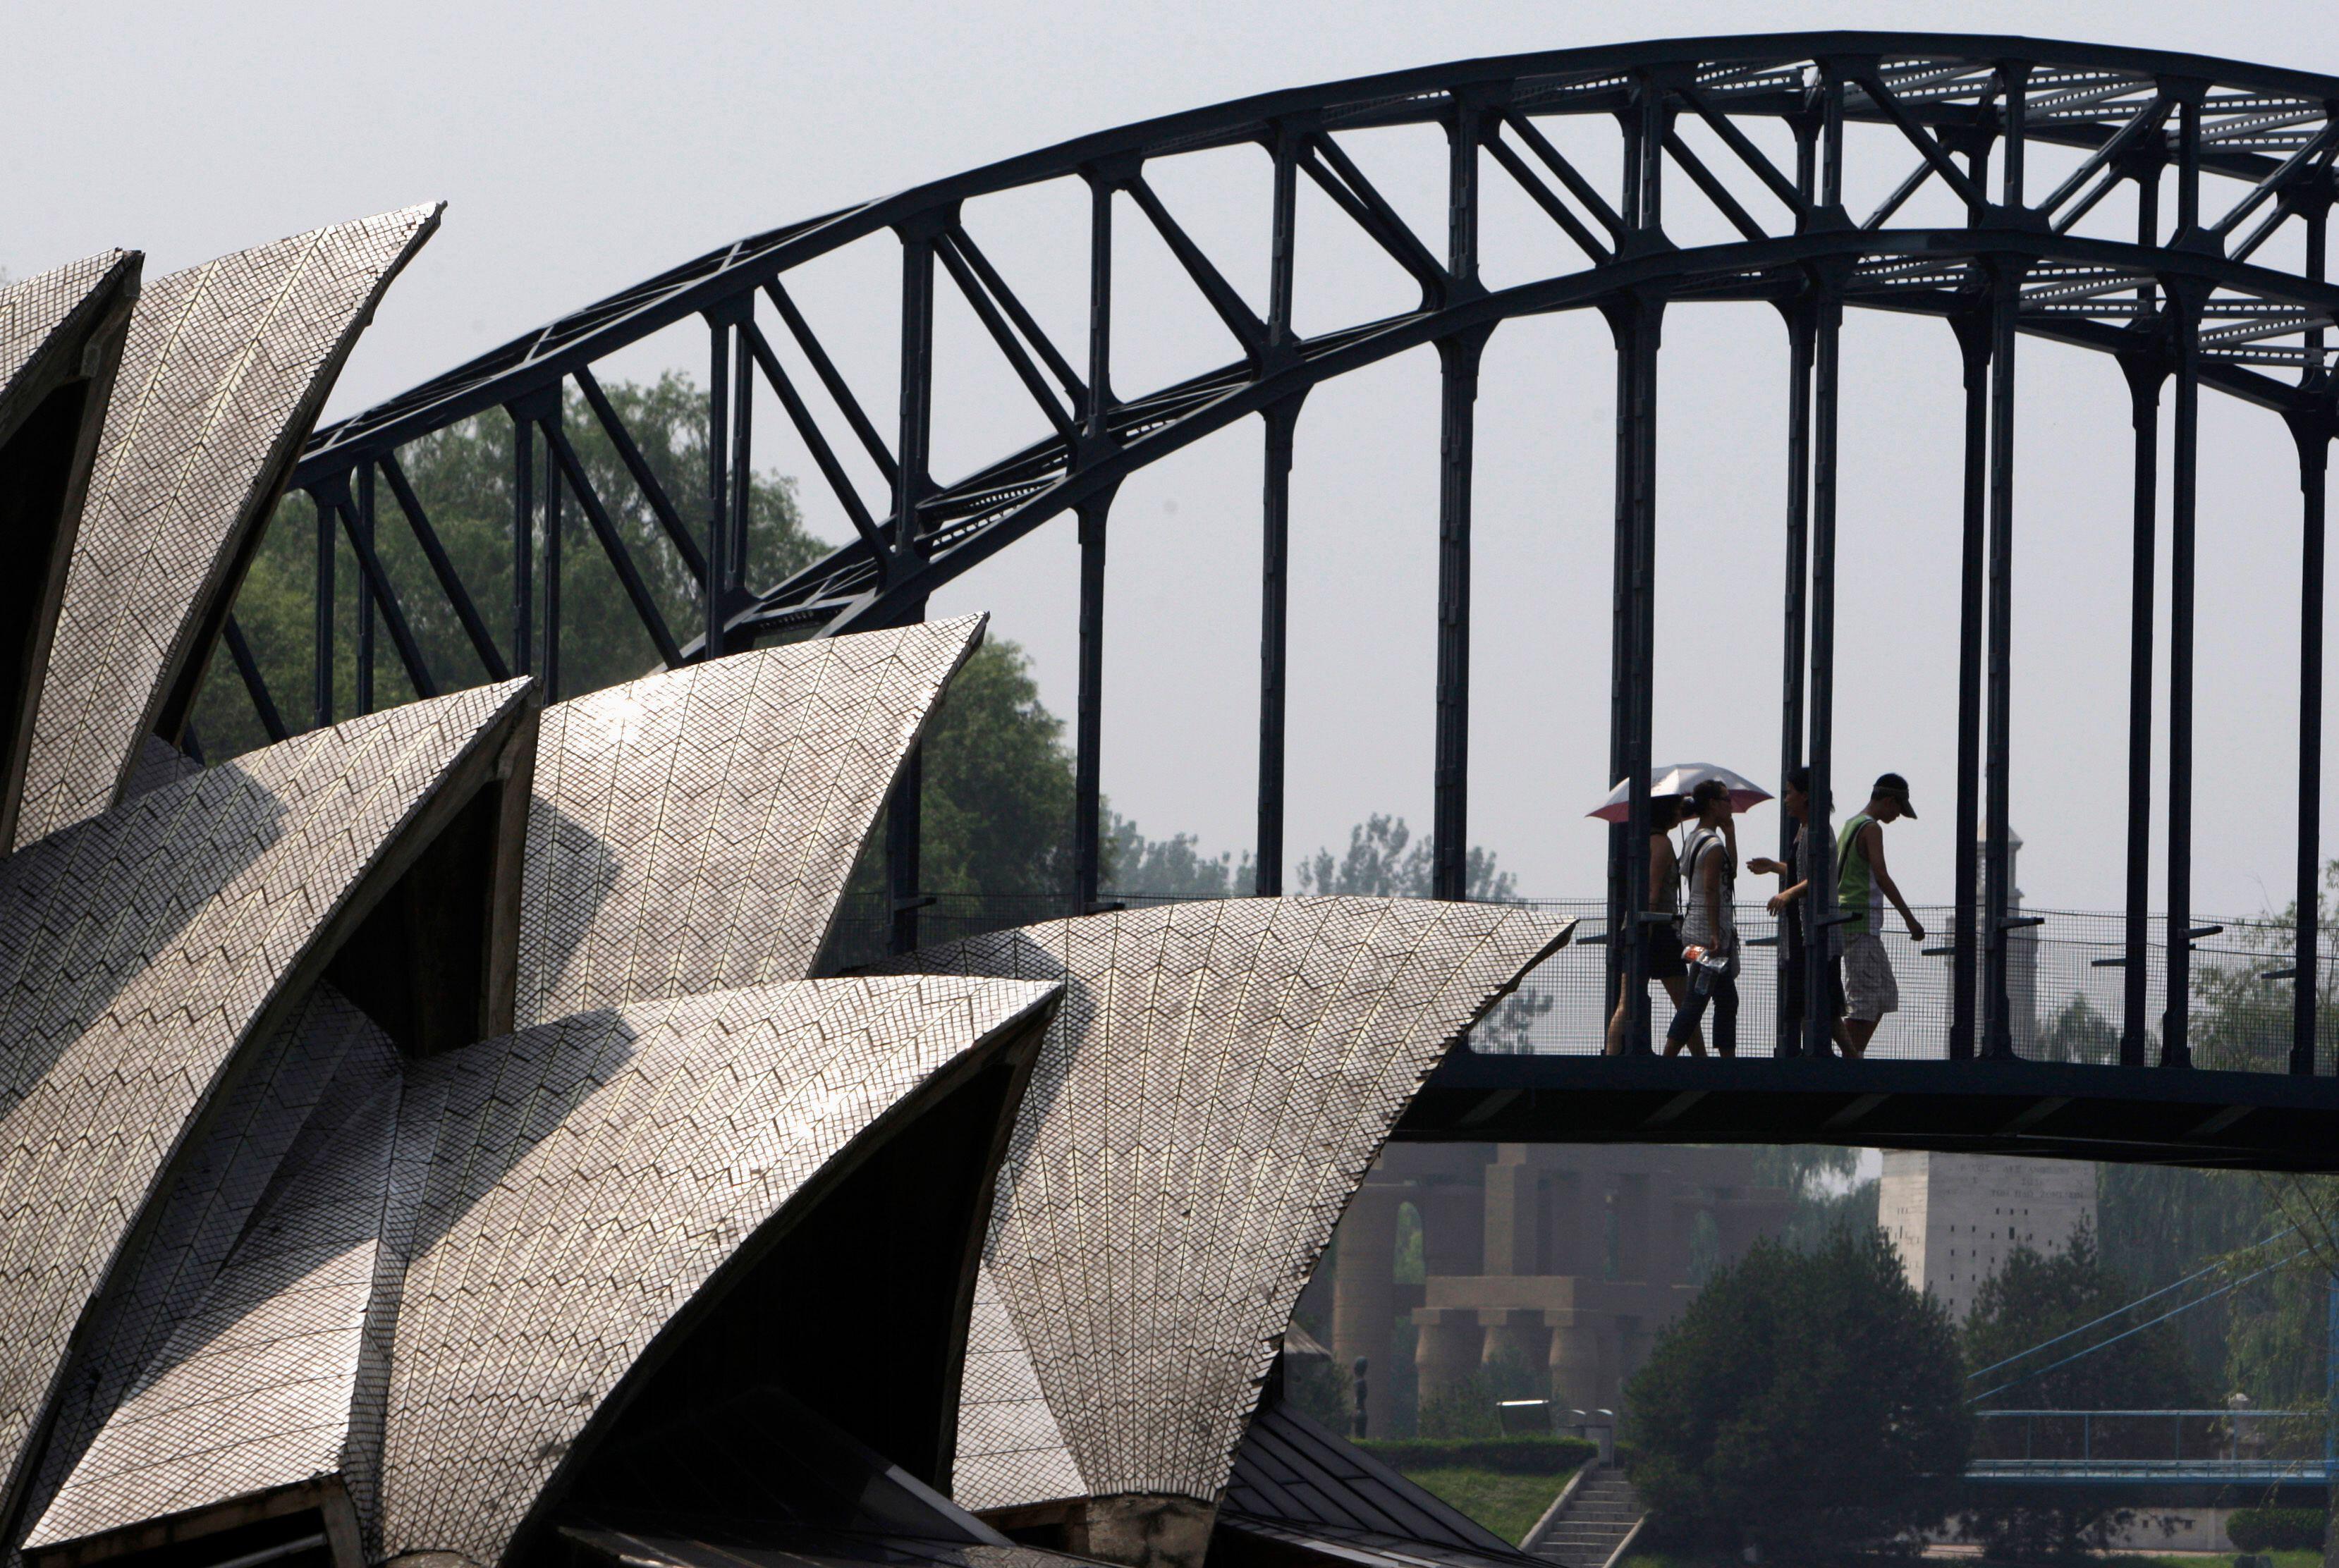 Besucher des Beijing World Park gehen über eine Nachbildung der Sydney Harbour Bridge, die neben einer Nachbildung des Sydney Opera House liegt